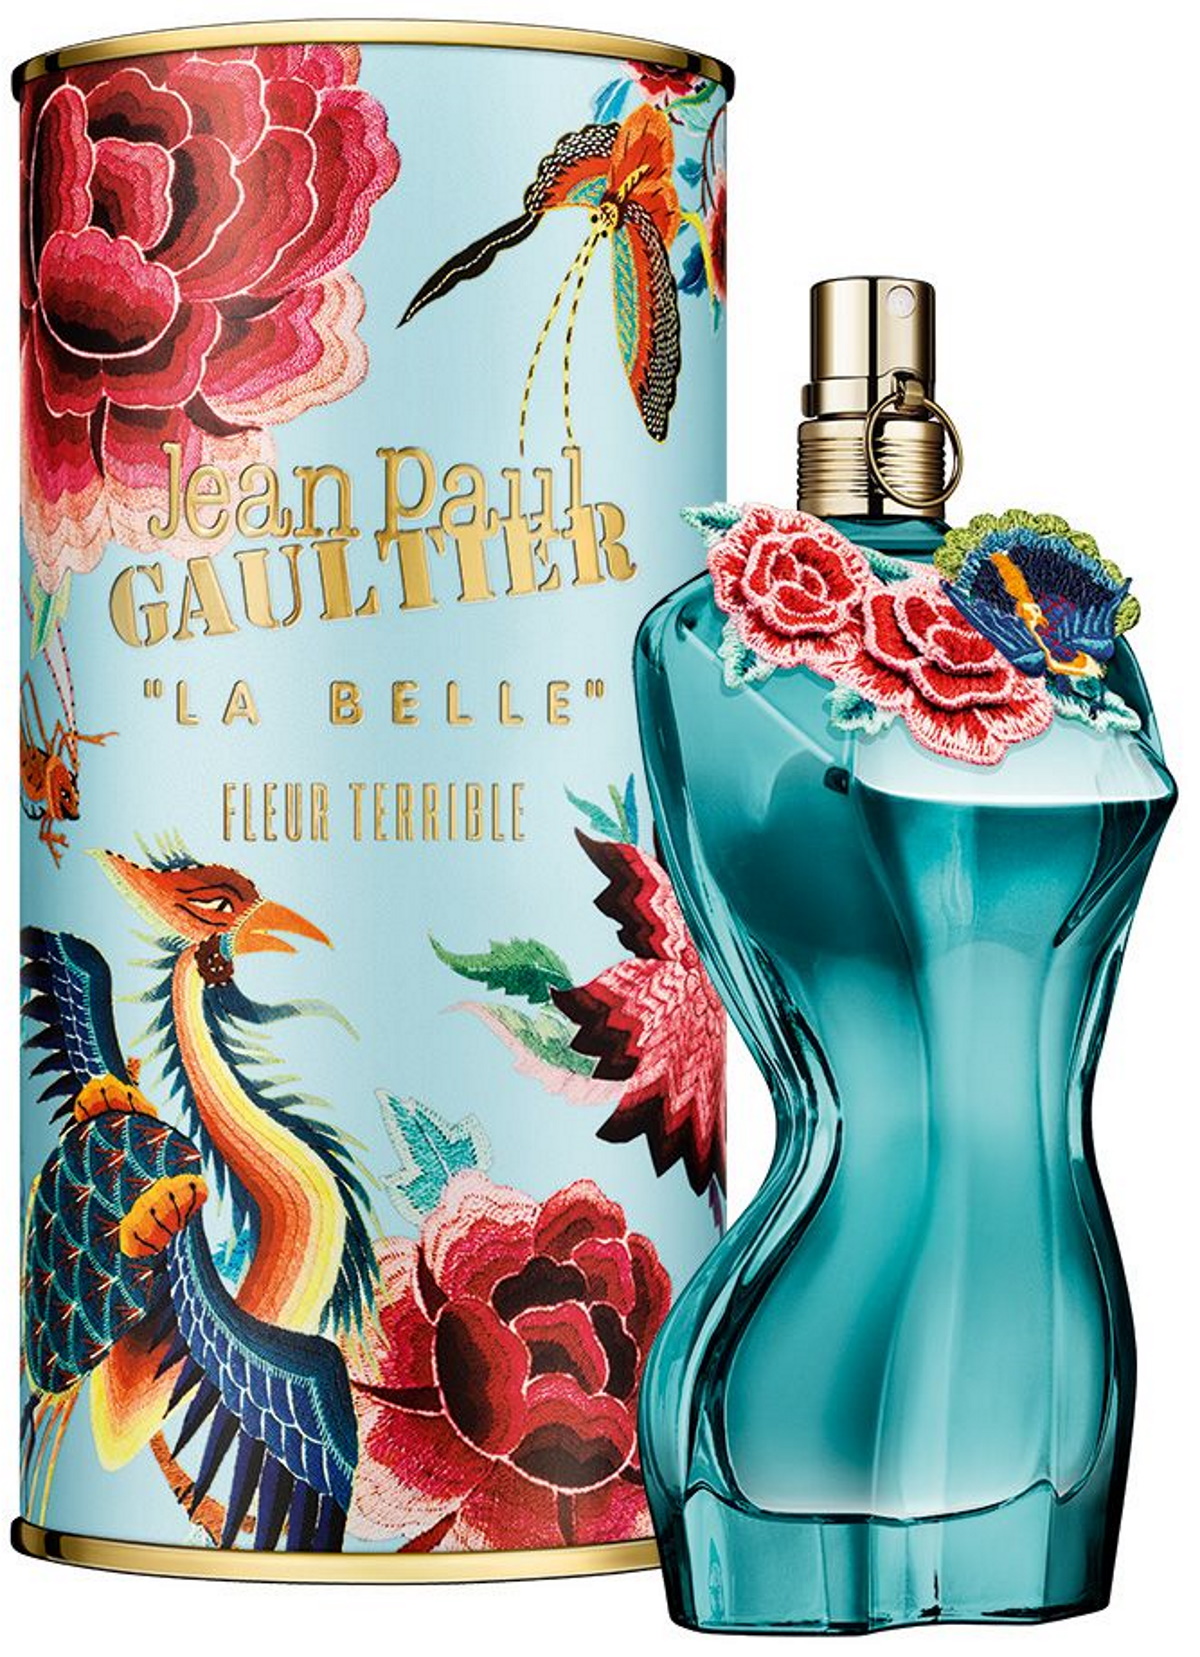 La Belle Fleur Terrible - Jean Paul Gaultier - Nouveauté 2022